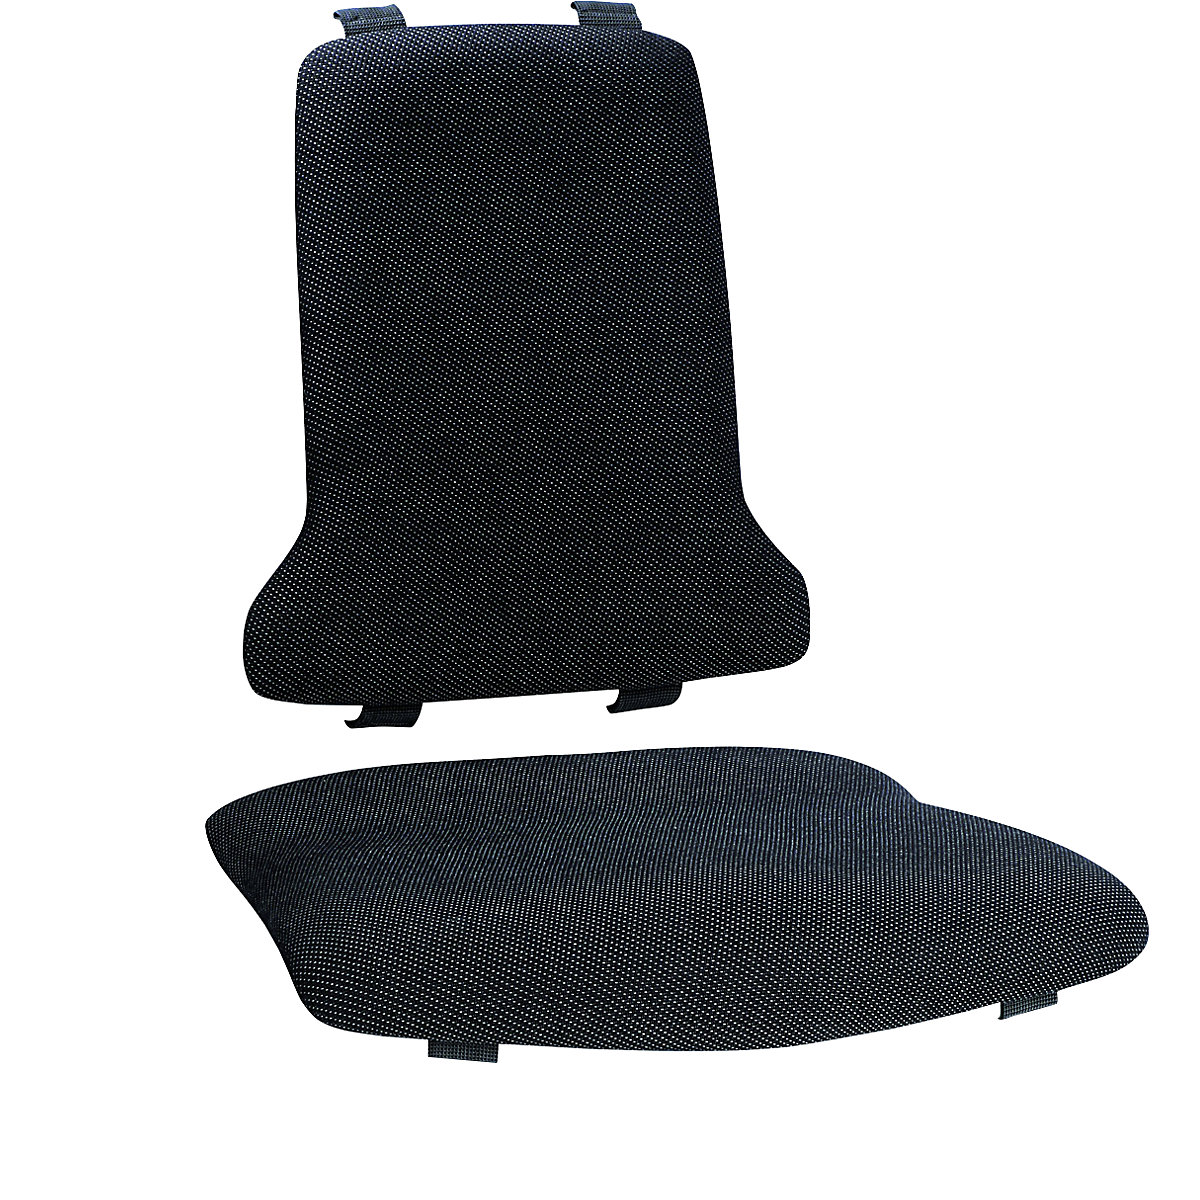 Polster bimos, Standard-Ausführung, je 1 Polster für Sitz und Rückenlehne, Textil-Polster, schwarz-4